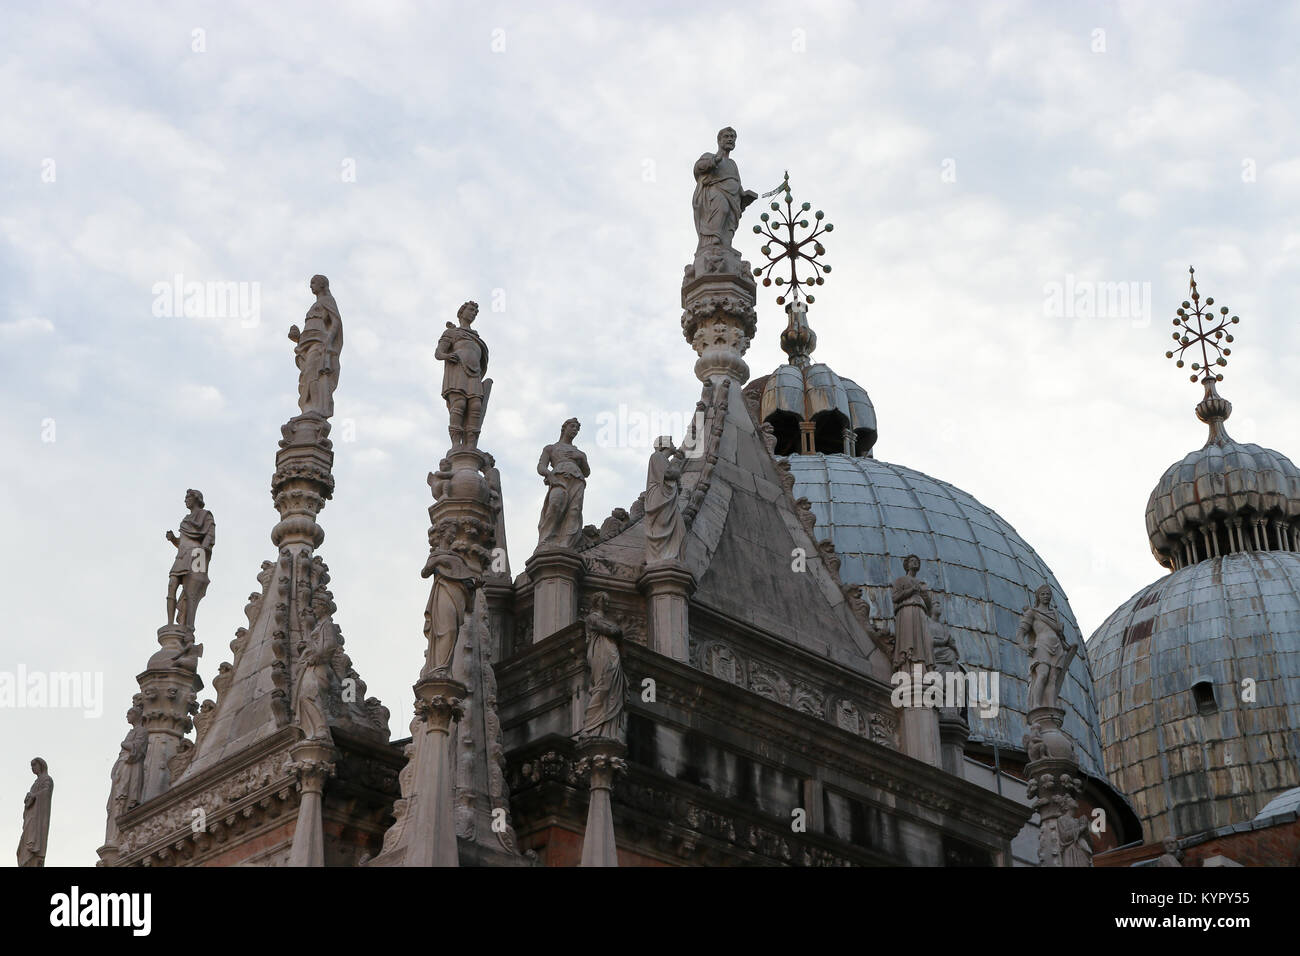 Los domos en el techo de la Basilica di San Marco (Basílica de San Marcos). Situado en la Piazza San Marco (Plaza de San Marcos), San Marco, Venecia, Italia. Foto de stock